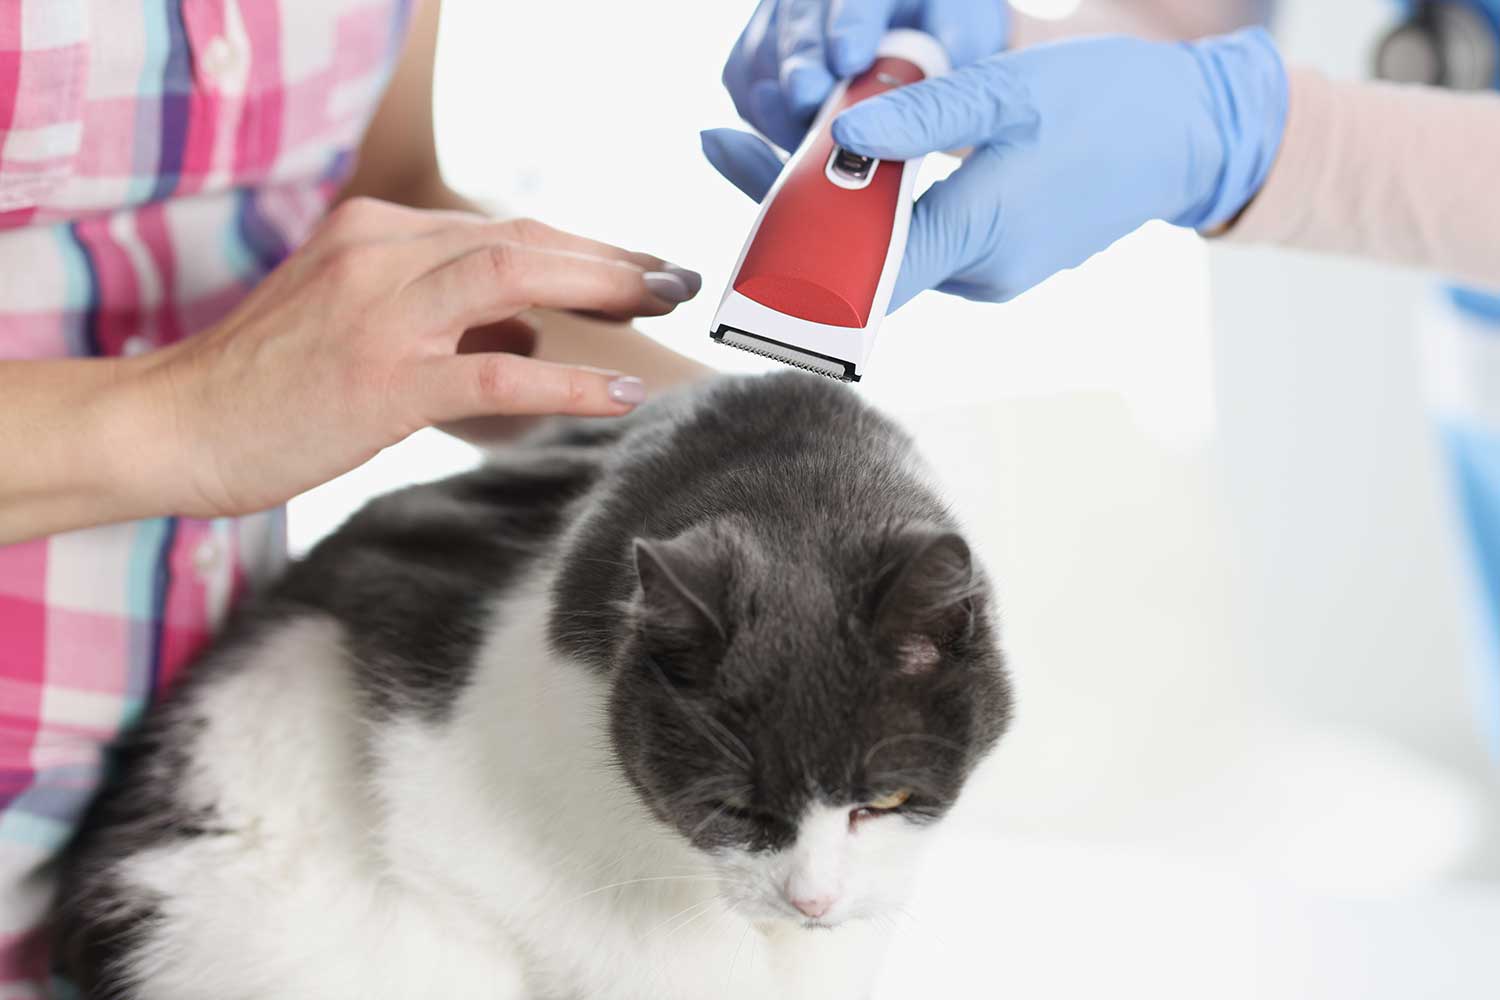 Veterinarian shearing hair of a cat